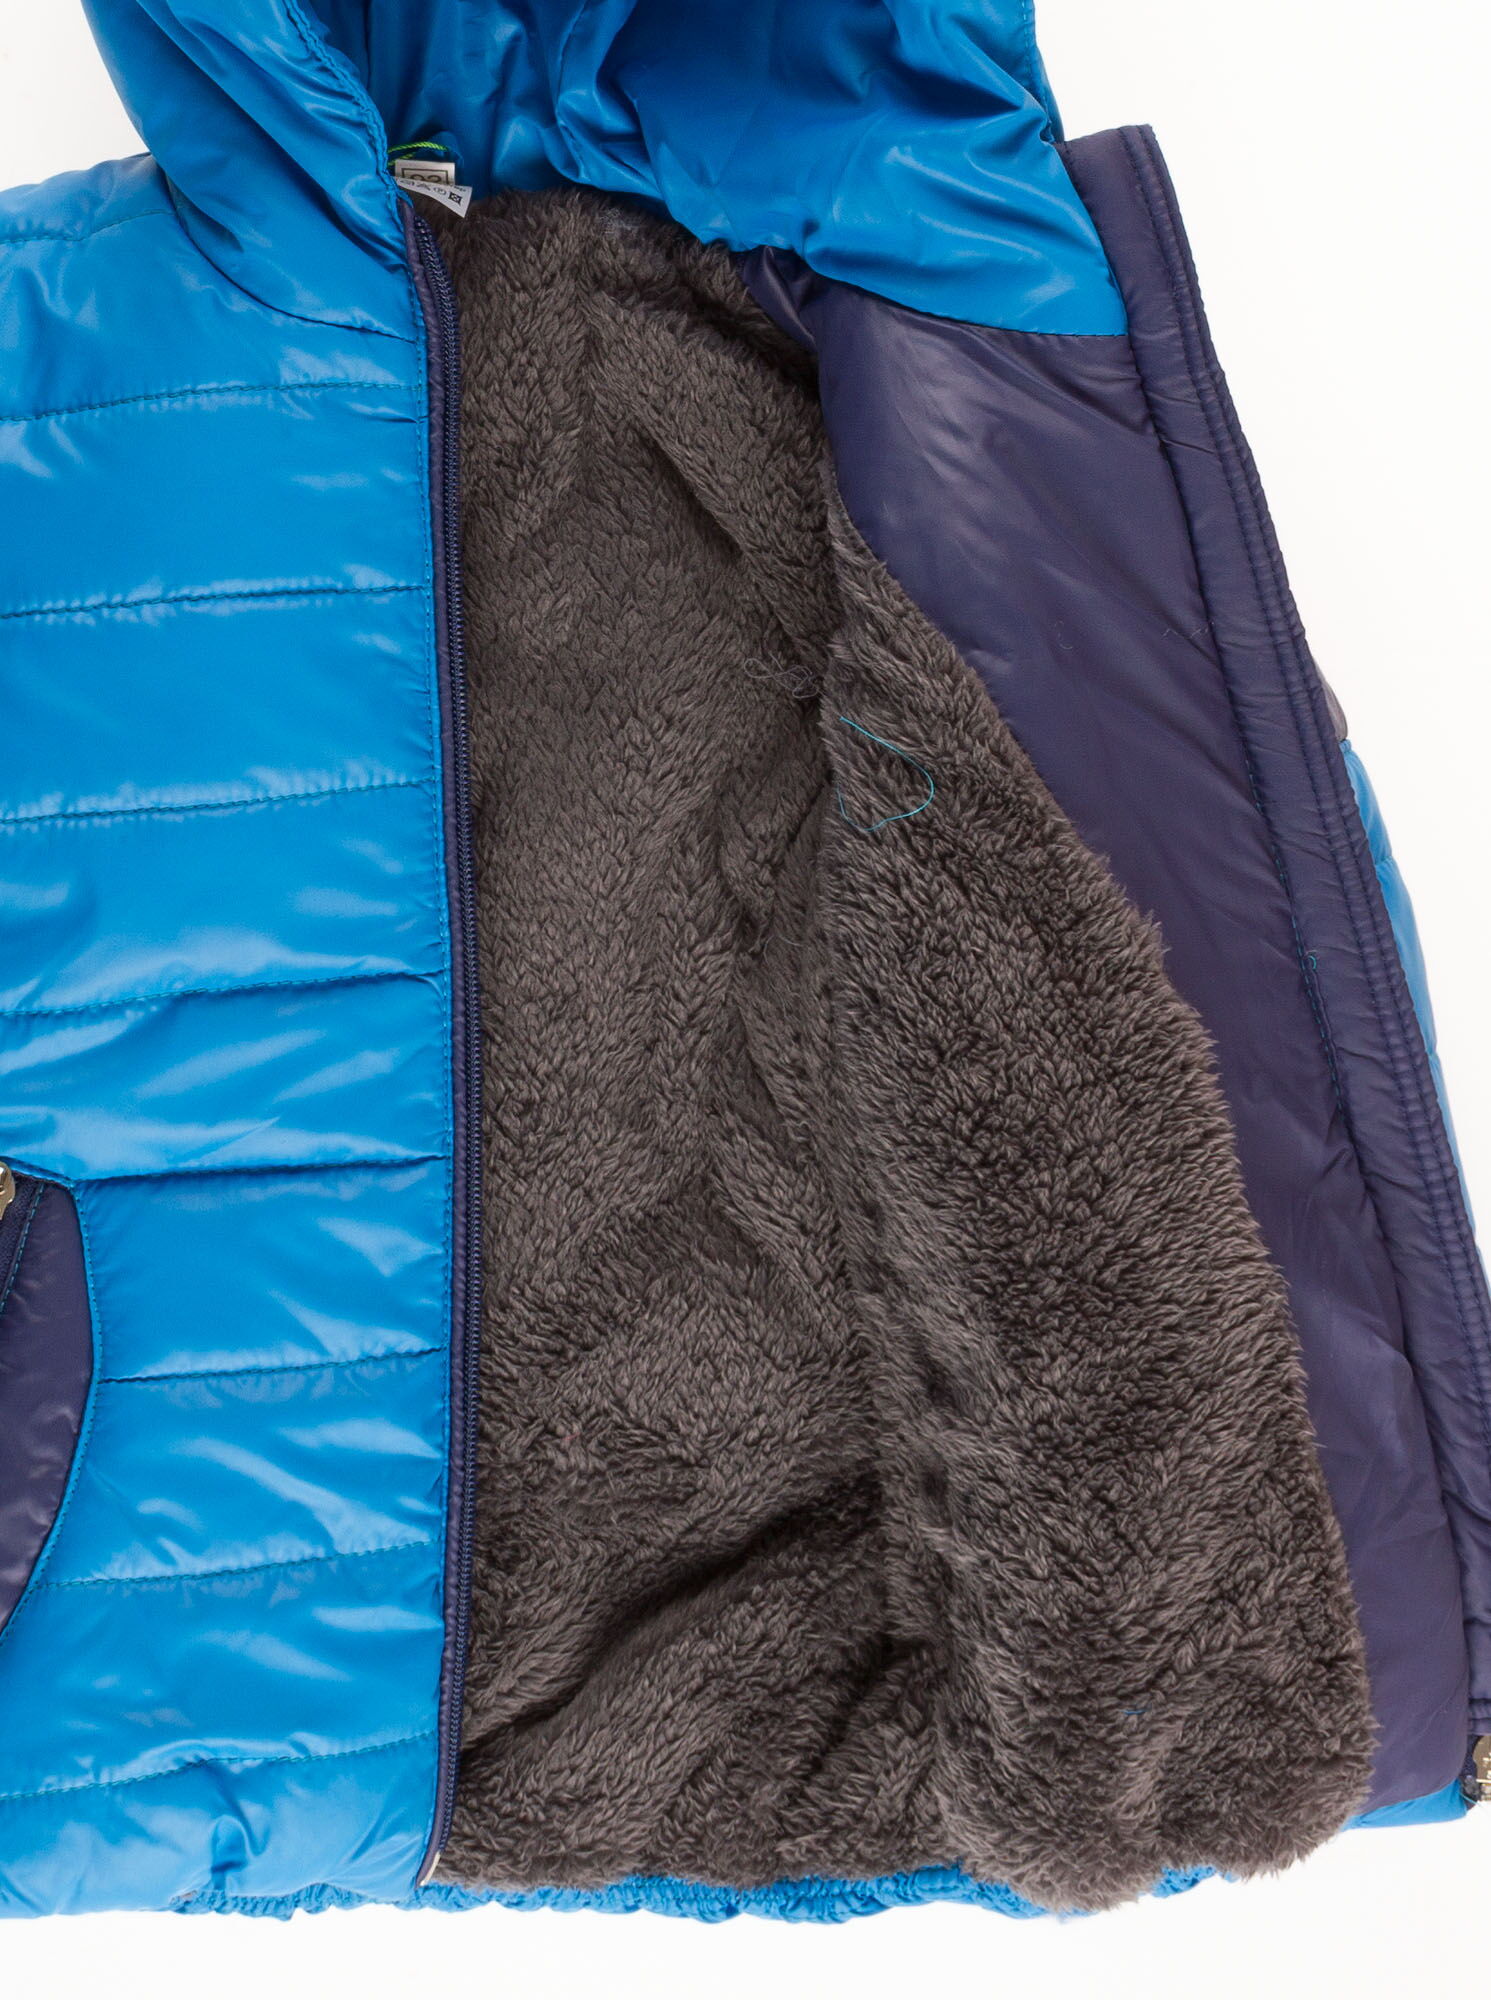 Комбинезон зимний (куртка+штаны) для мальчика Одягайко голубой 2820/01221 - размеры